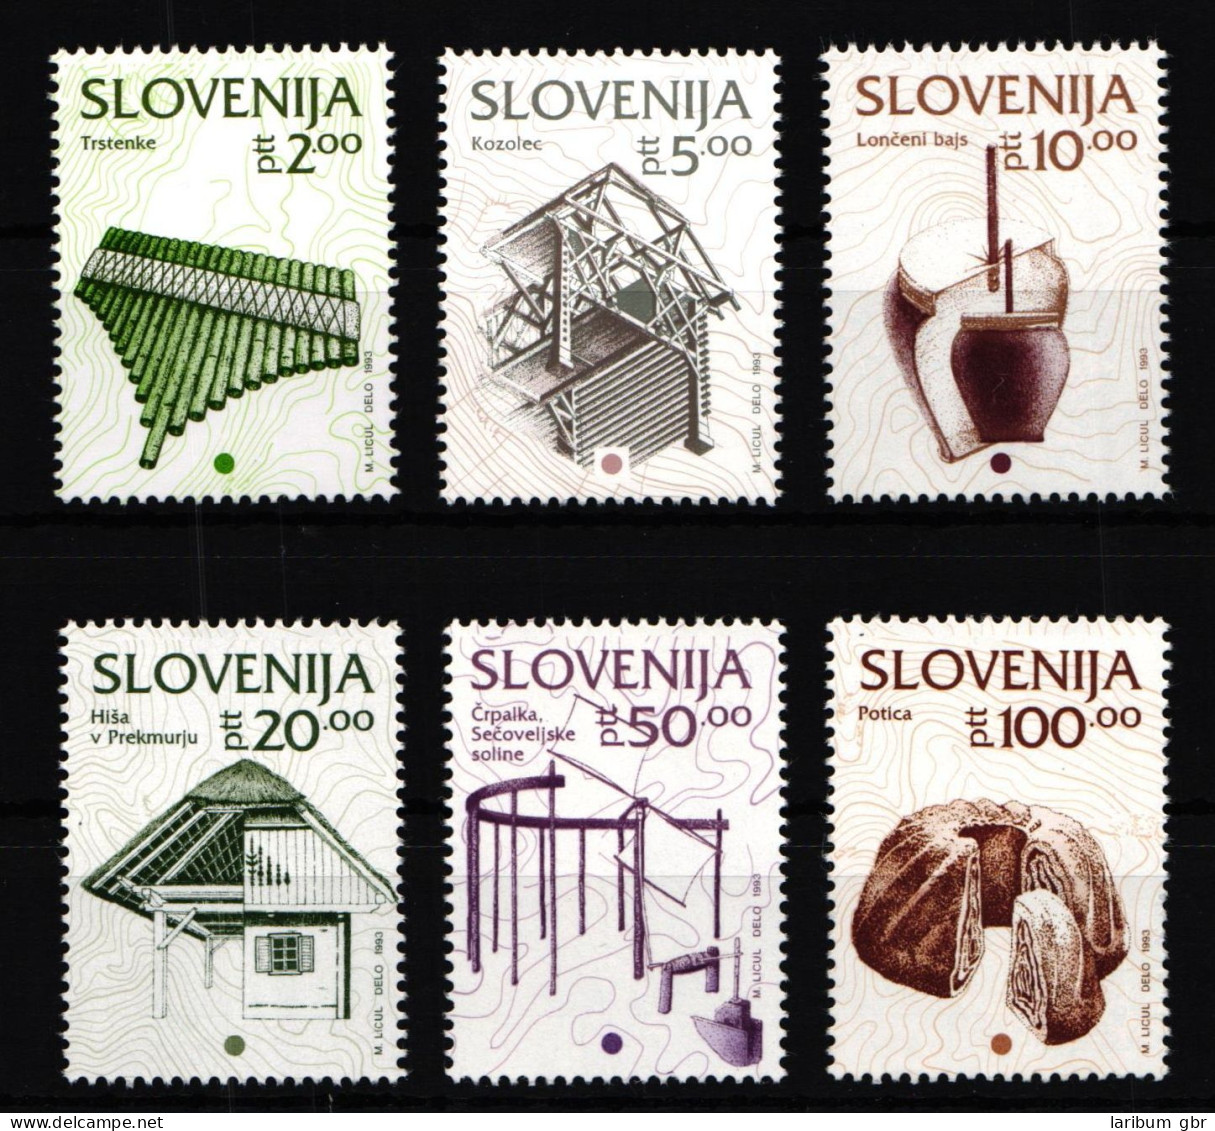 Slowenien 51-56 Postfrisch #GK348 - Slovénie